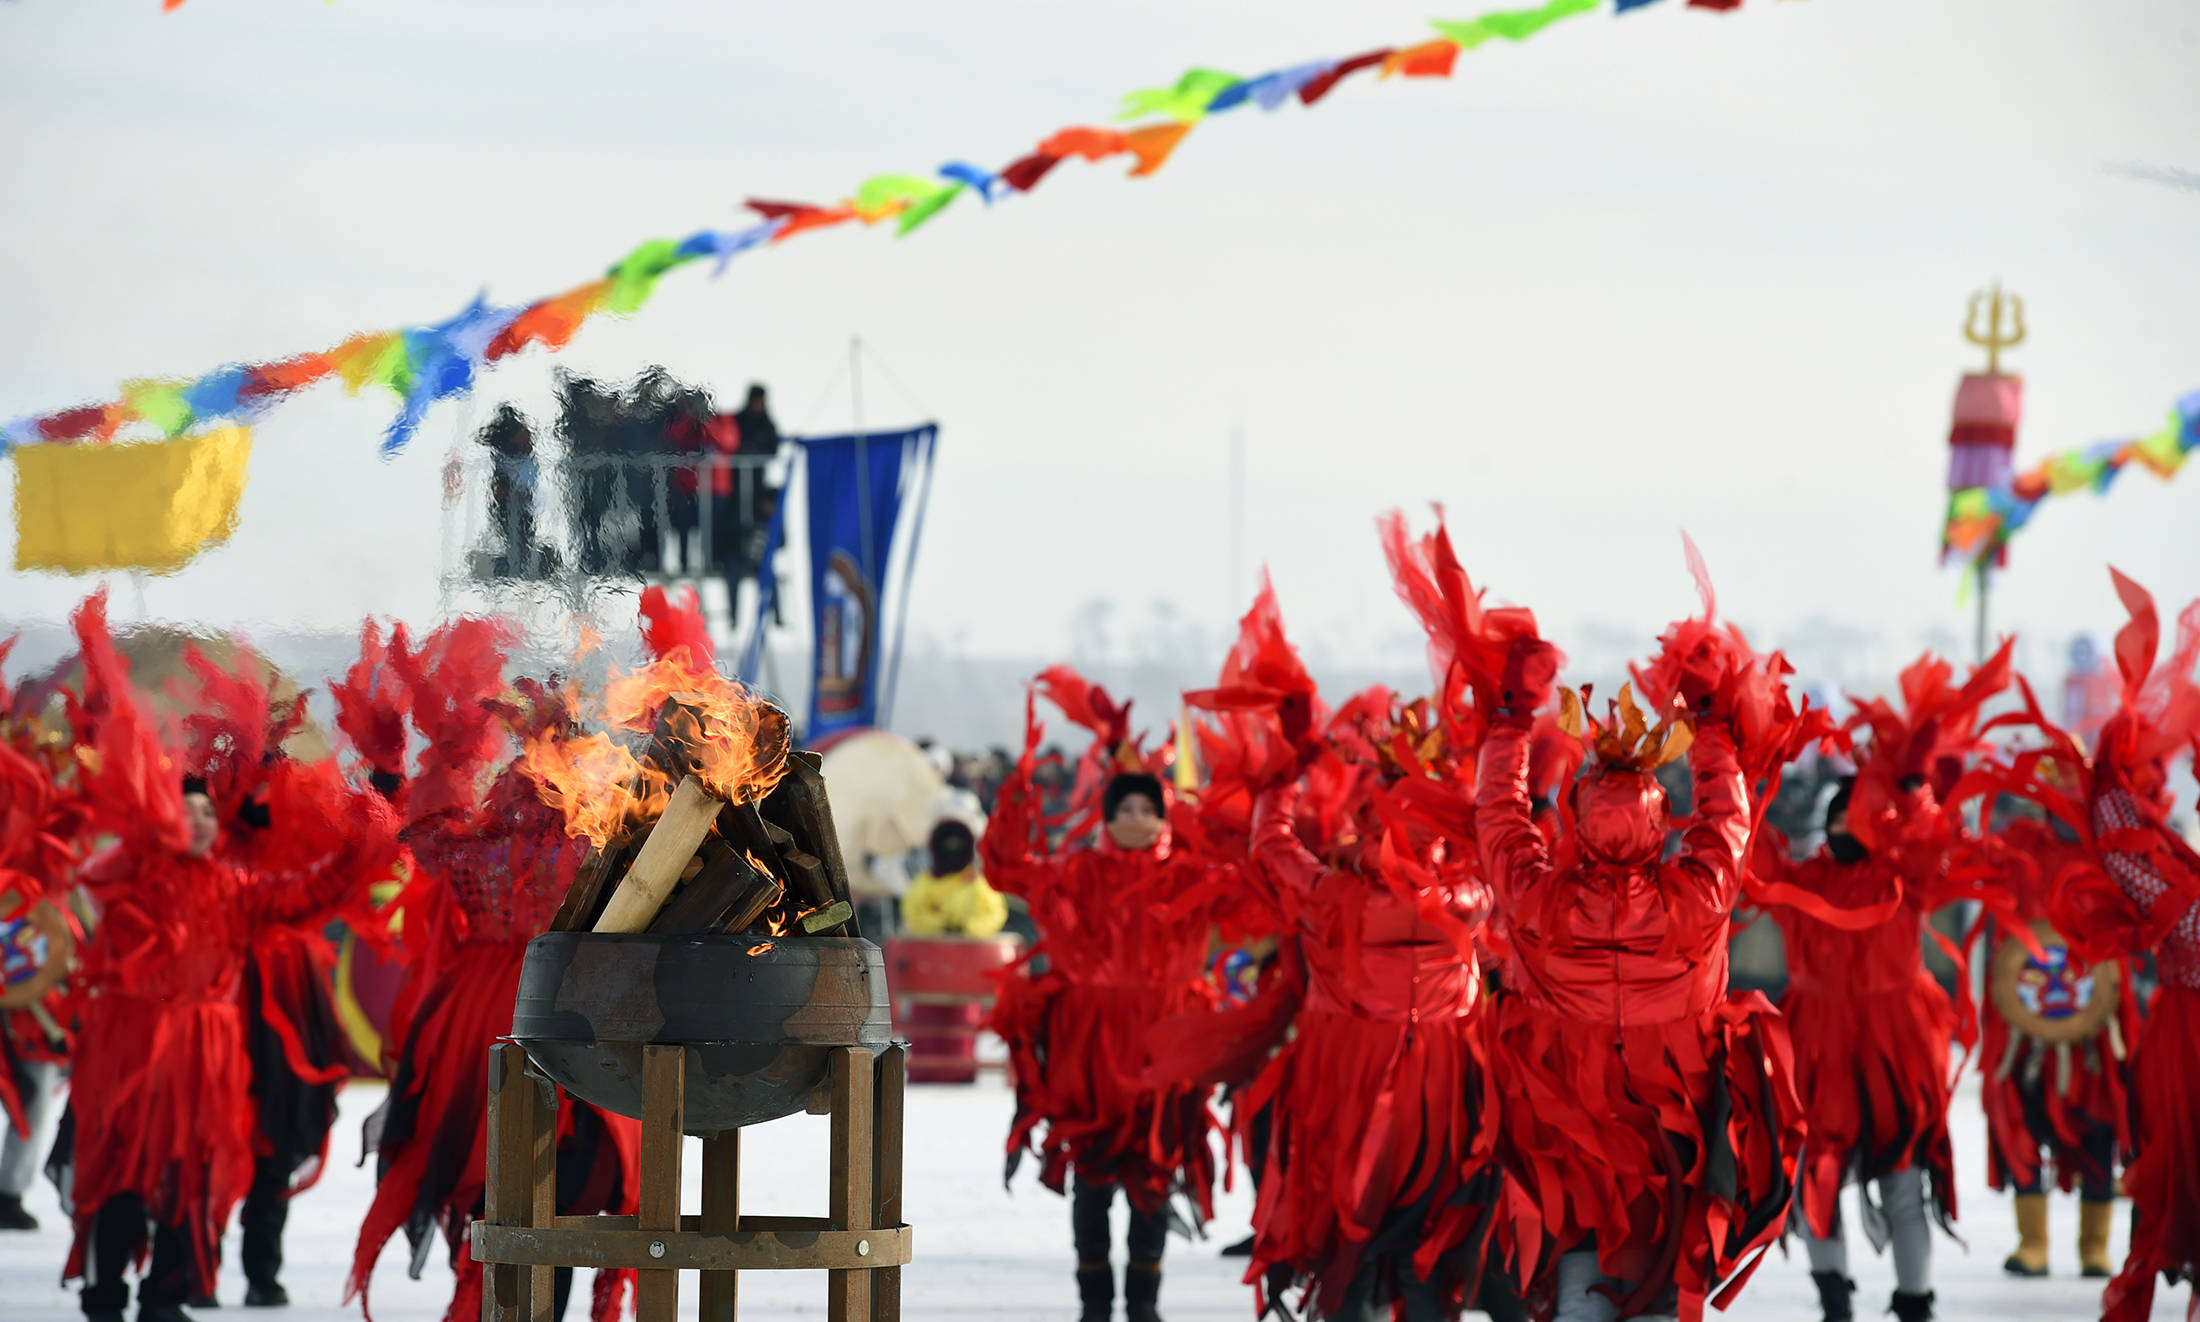 原创香港中国旅游签约摄影师张桂芝:查干湖冬捕的"祭湖醒网"活动